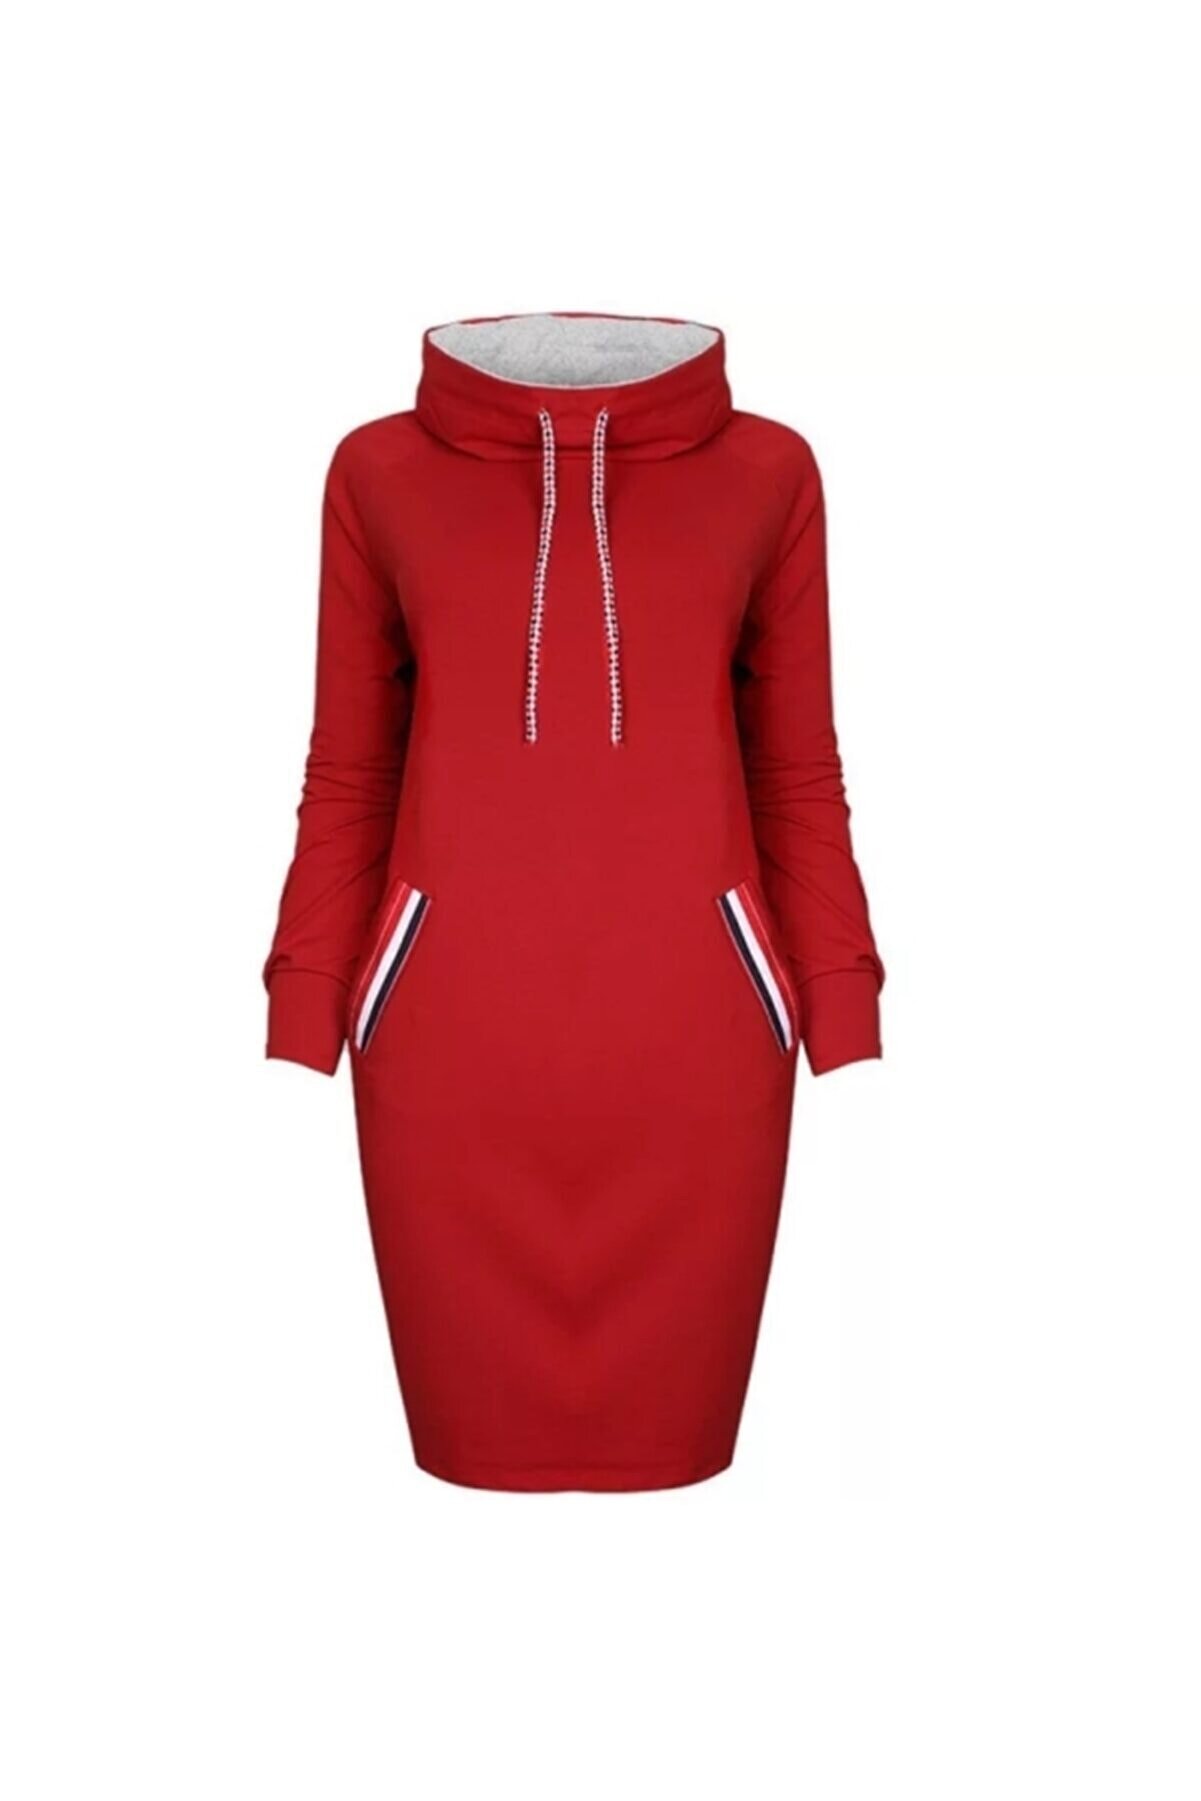 Visqon Yeni Model Kadın Midi Boy Şerit Detay Midi Boy Spor Elbise (Kırmızı)